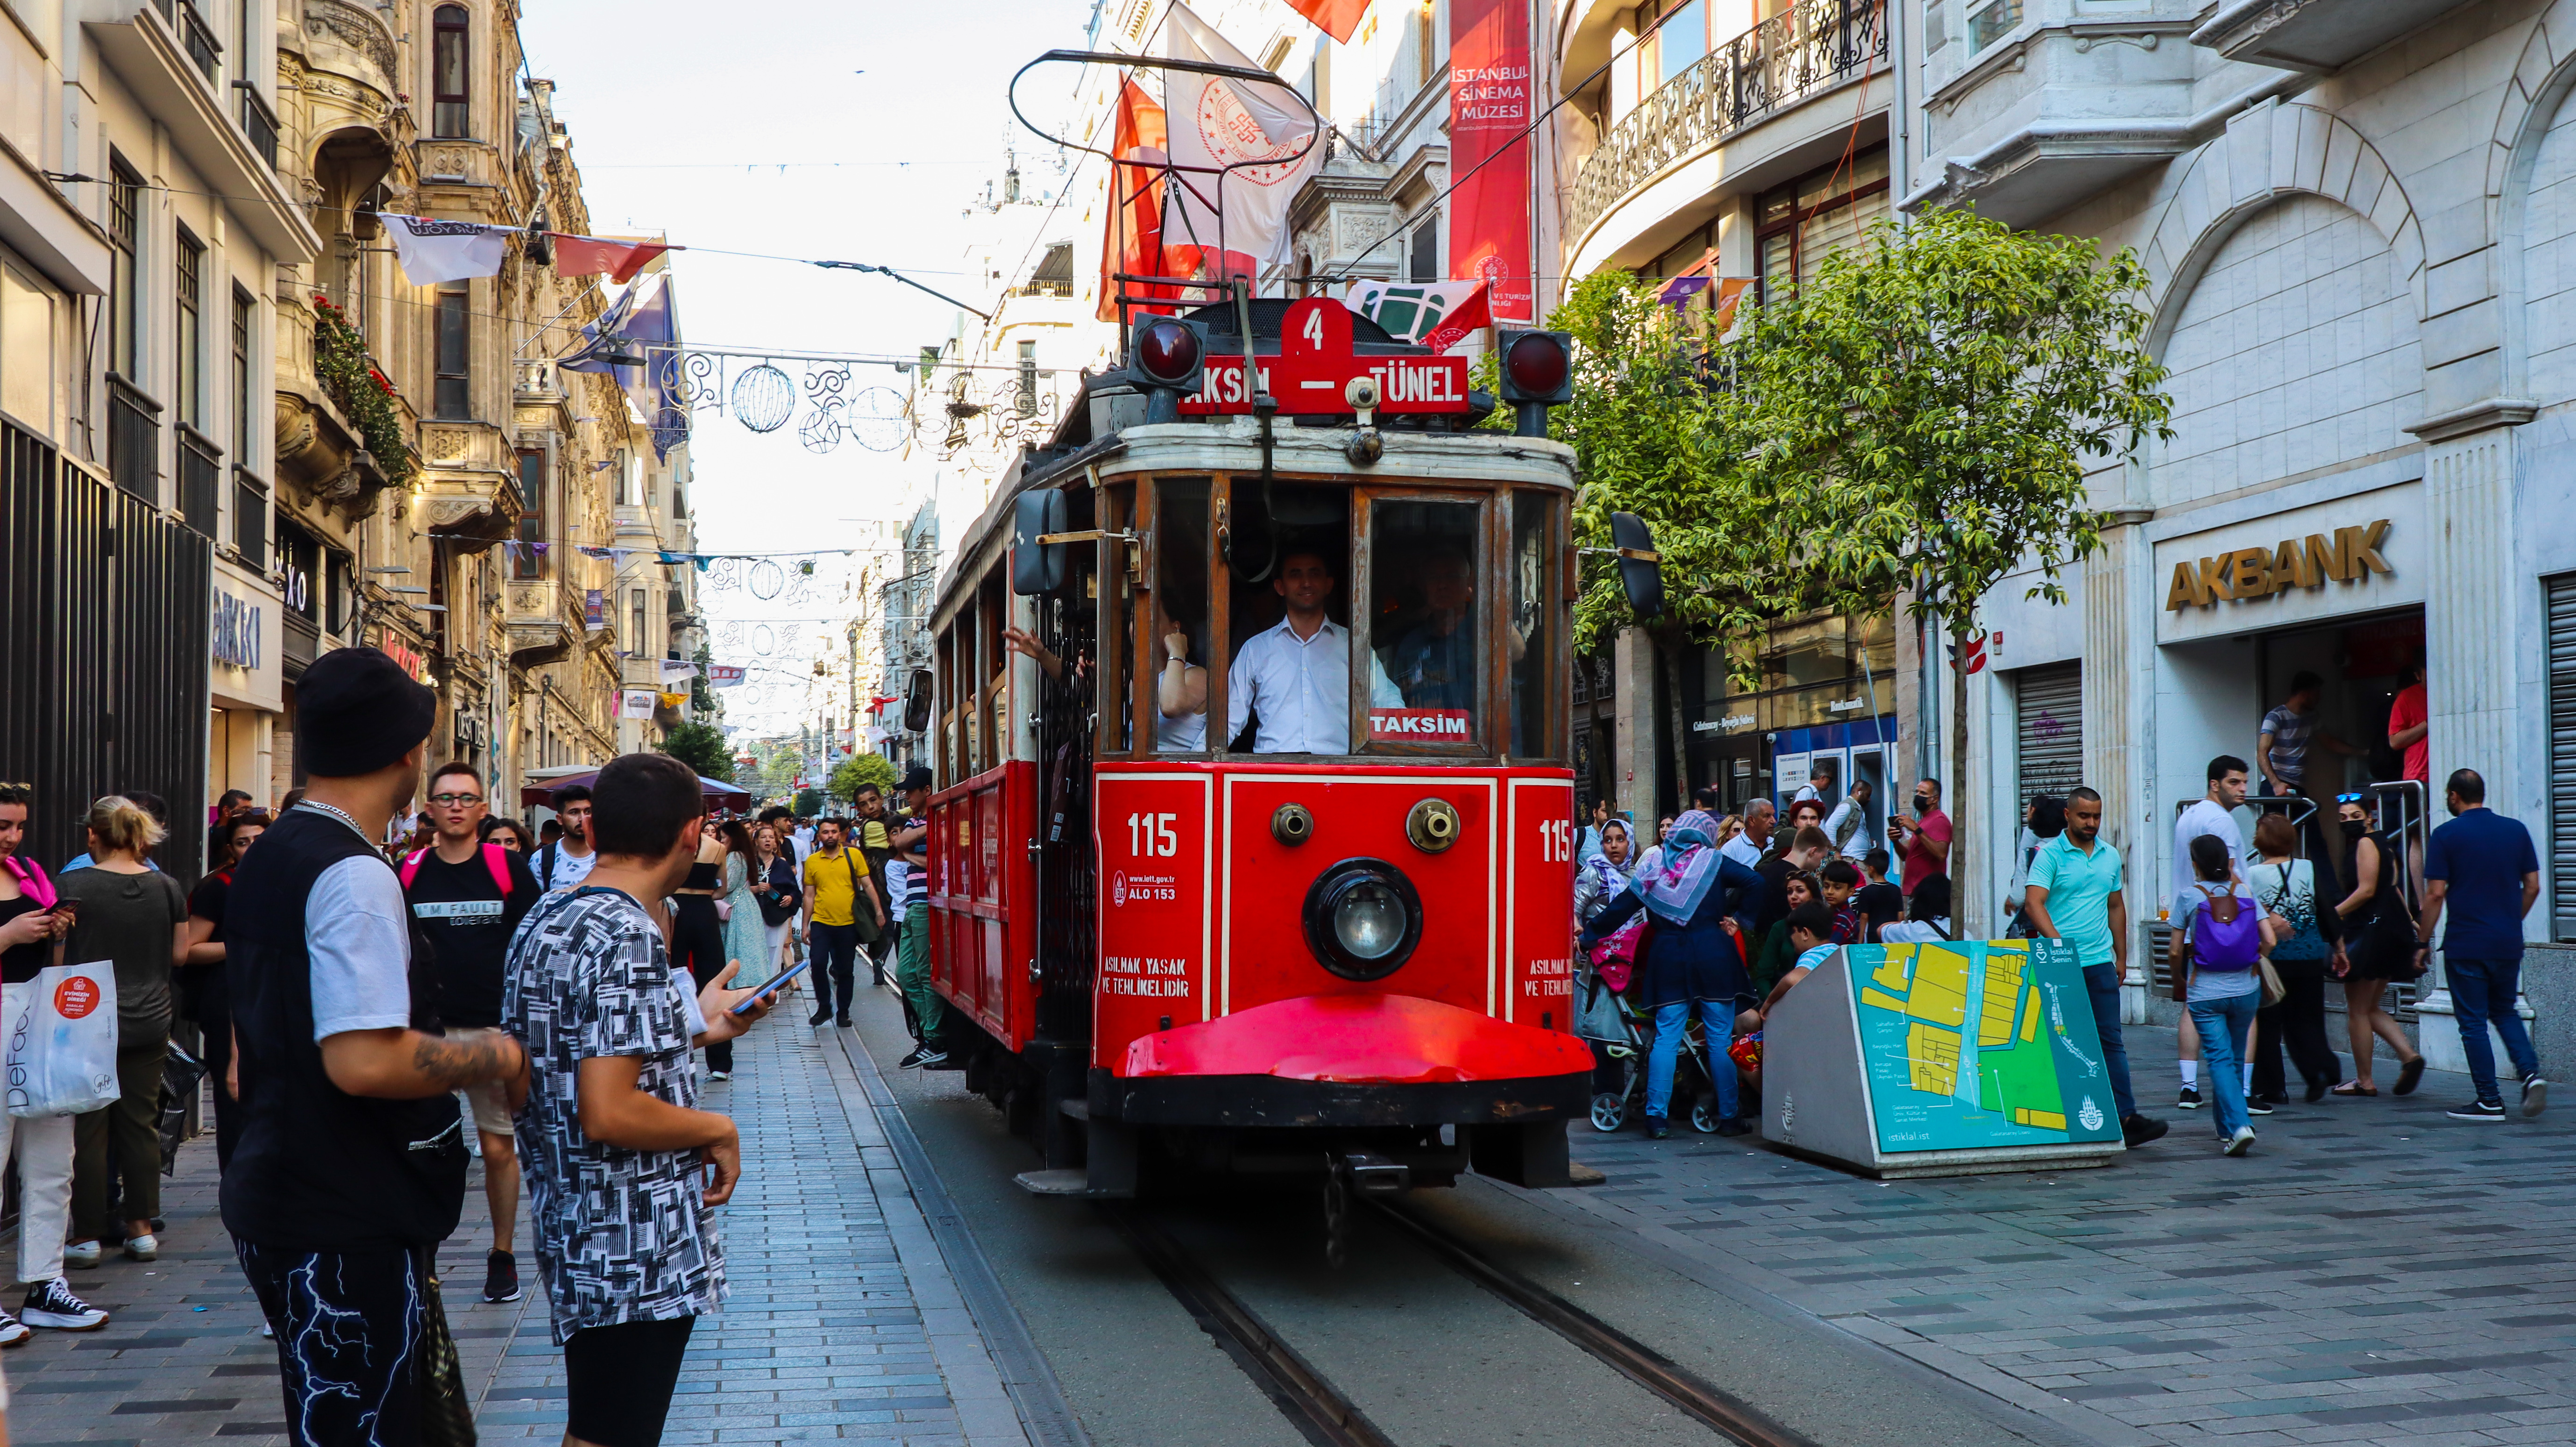 Le tramway touristique de la place Taksim